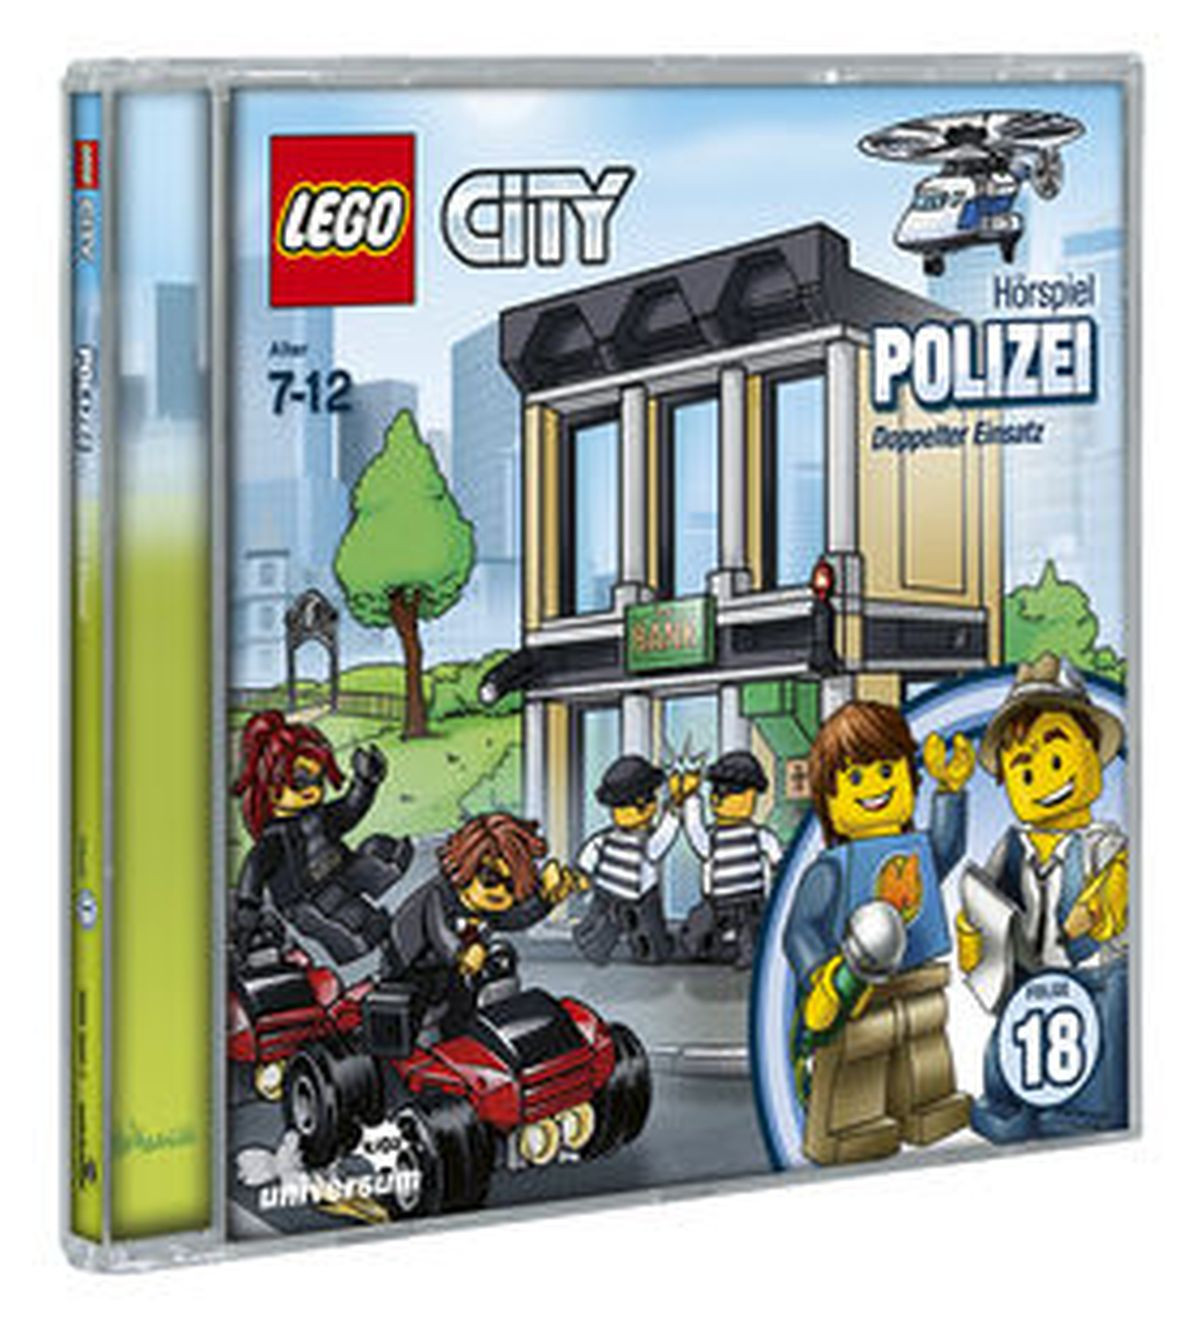 LEGO City - 18 - Polizei | pop.de